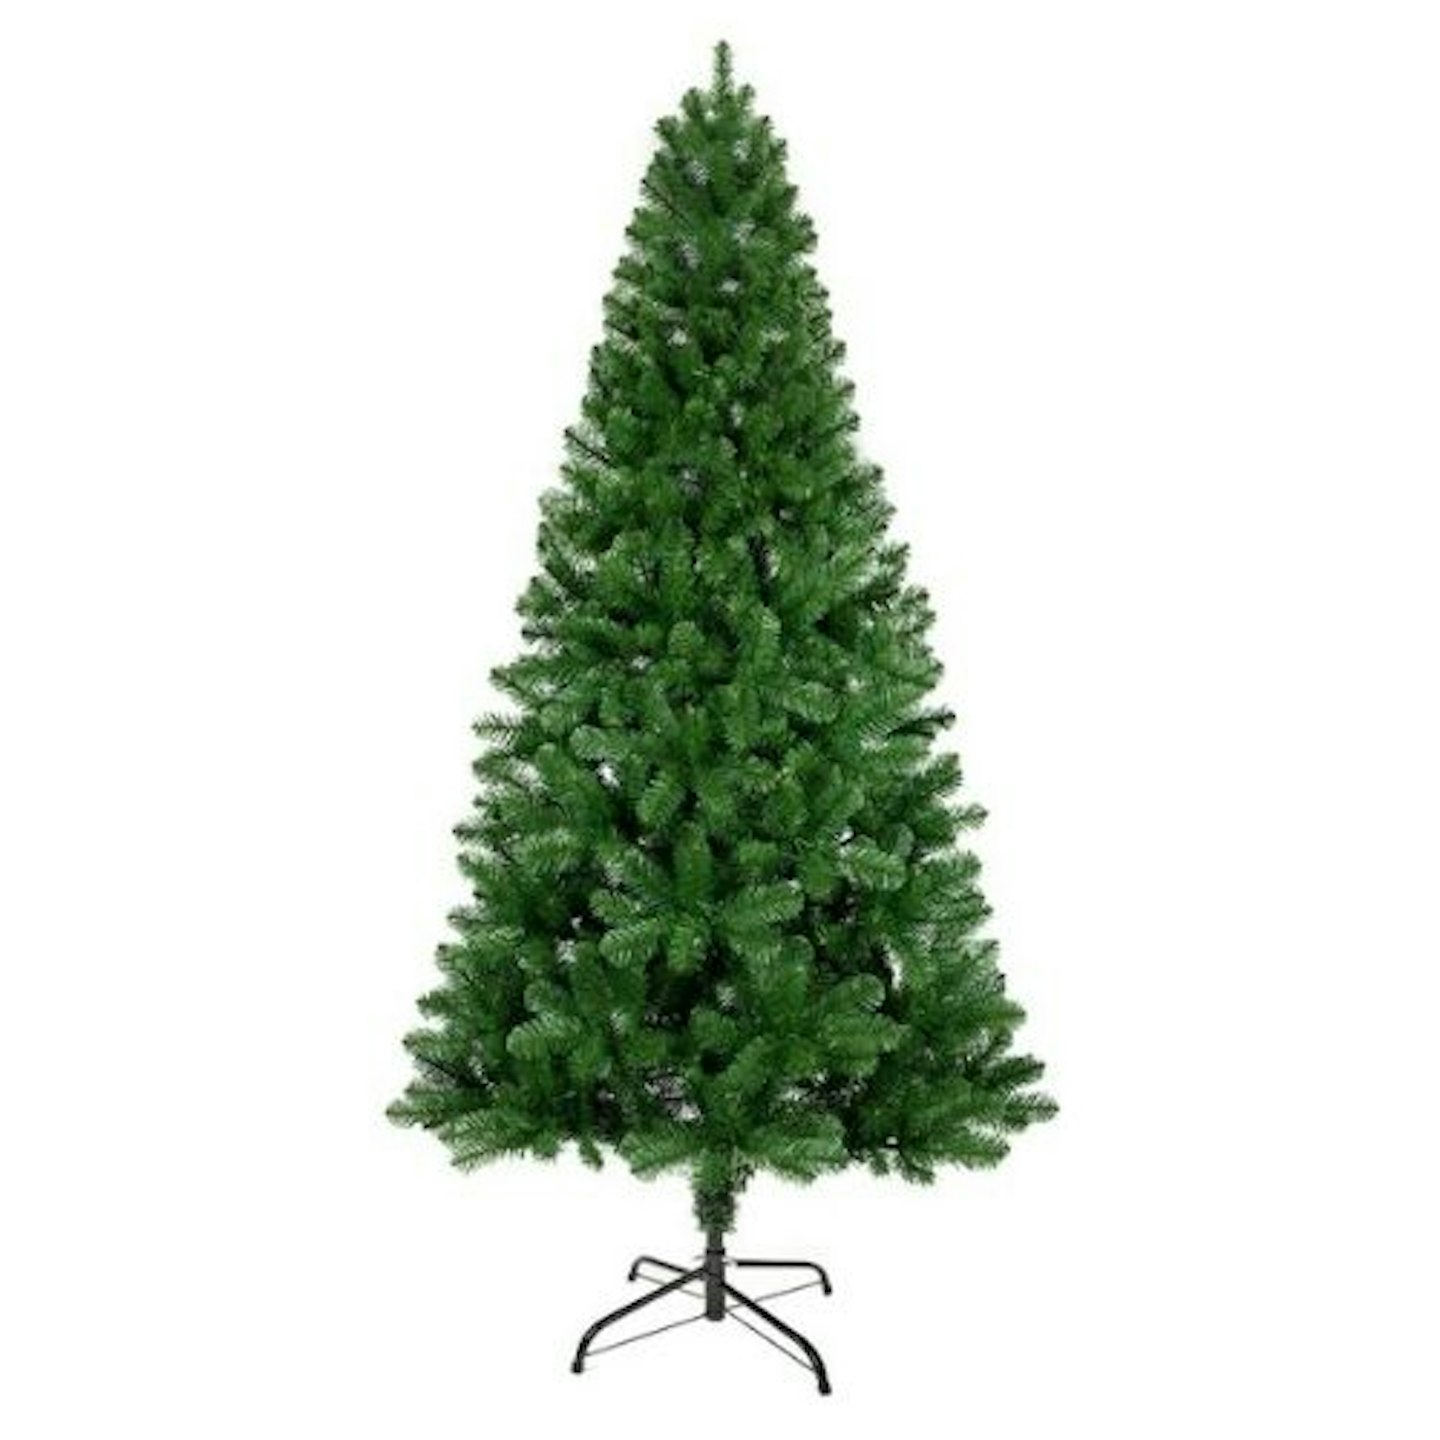 ANSIO Christmas Tree